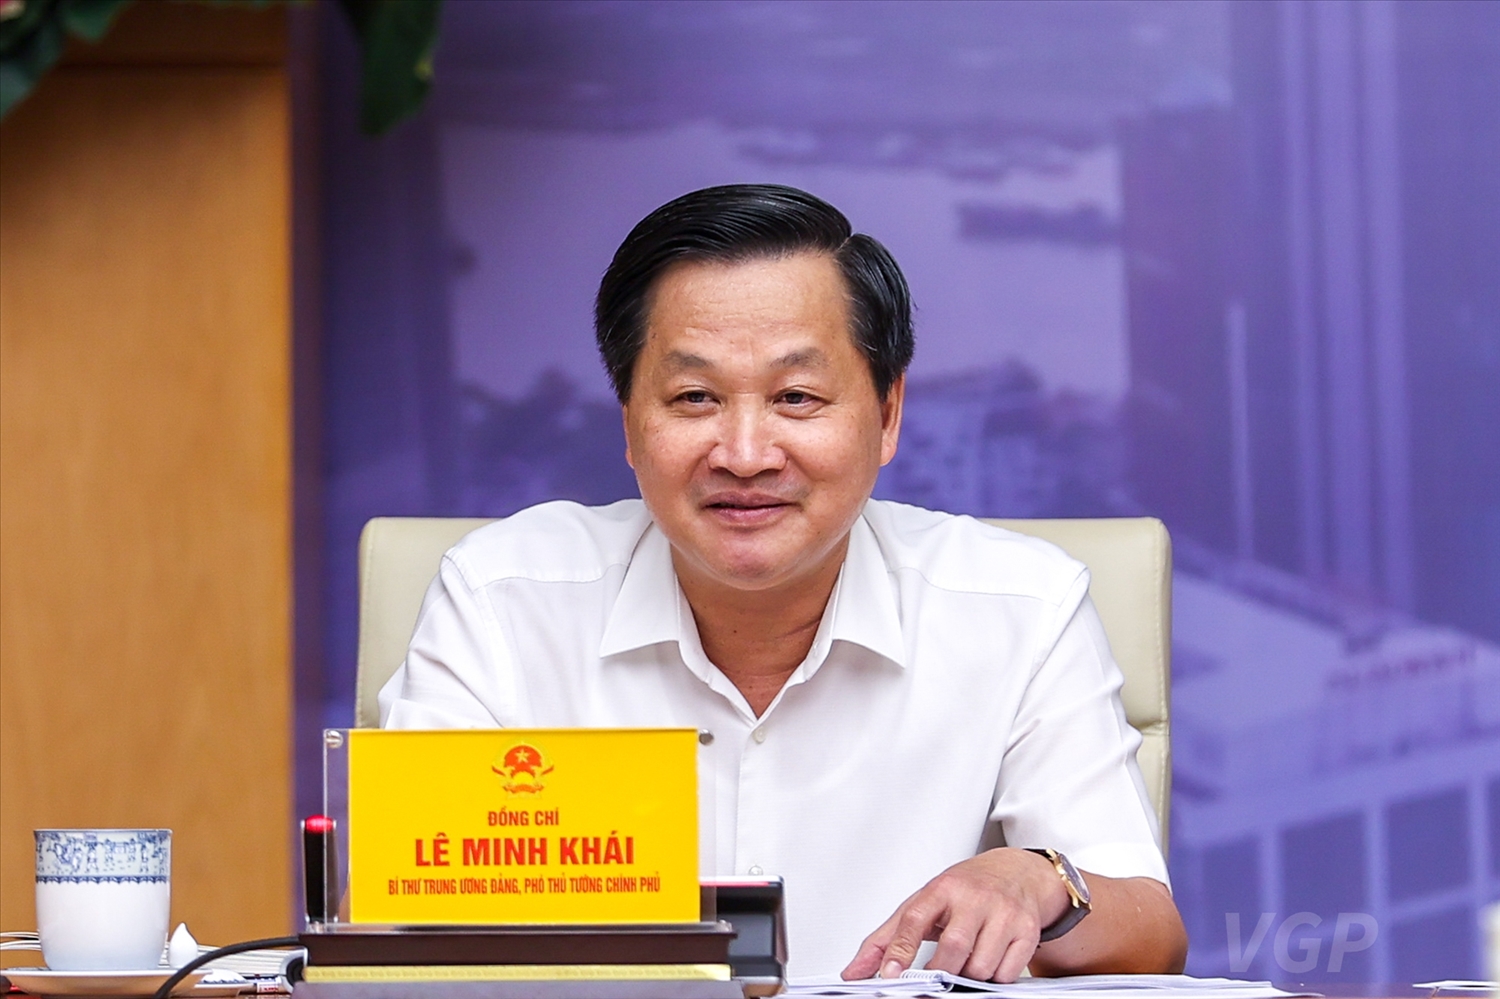 Chính phủ phân công Phó Thủ tướng Lê Minh Khái trực tiếp chỉ đạo việc phát triển hệ sinh thái thị trường BĐS an toàn, lành mạnh, bền vững - Ảnh: VGP/Nhật Bắc